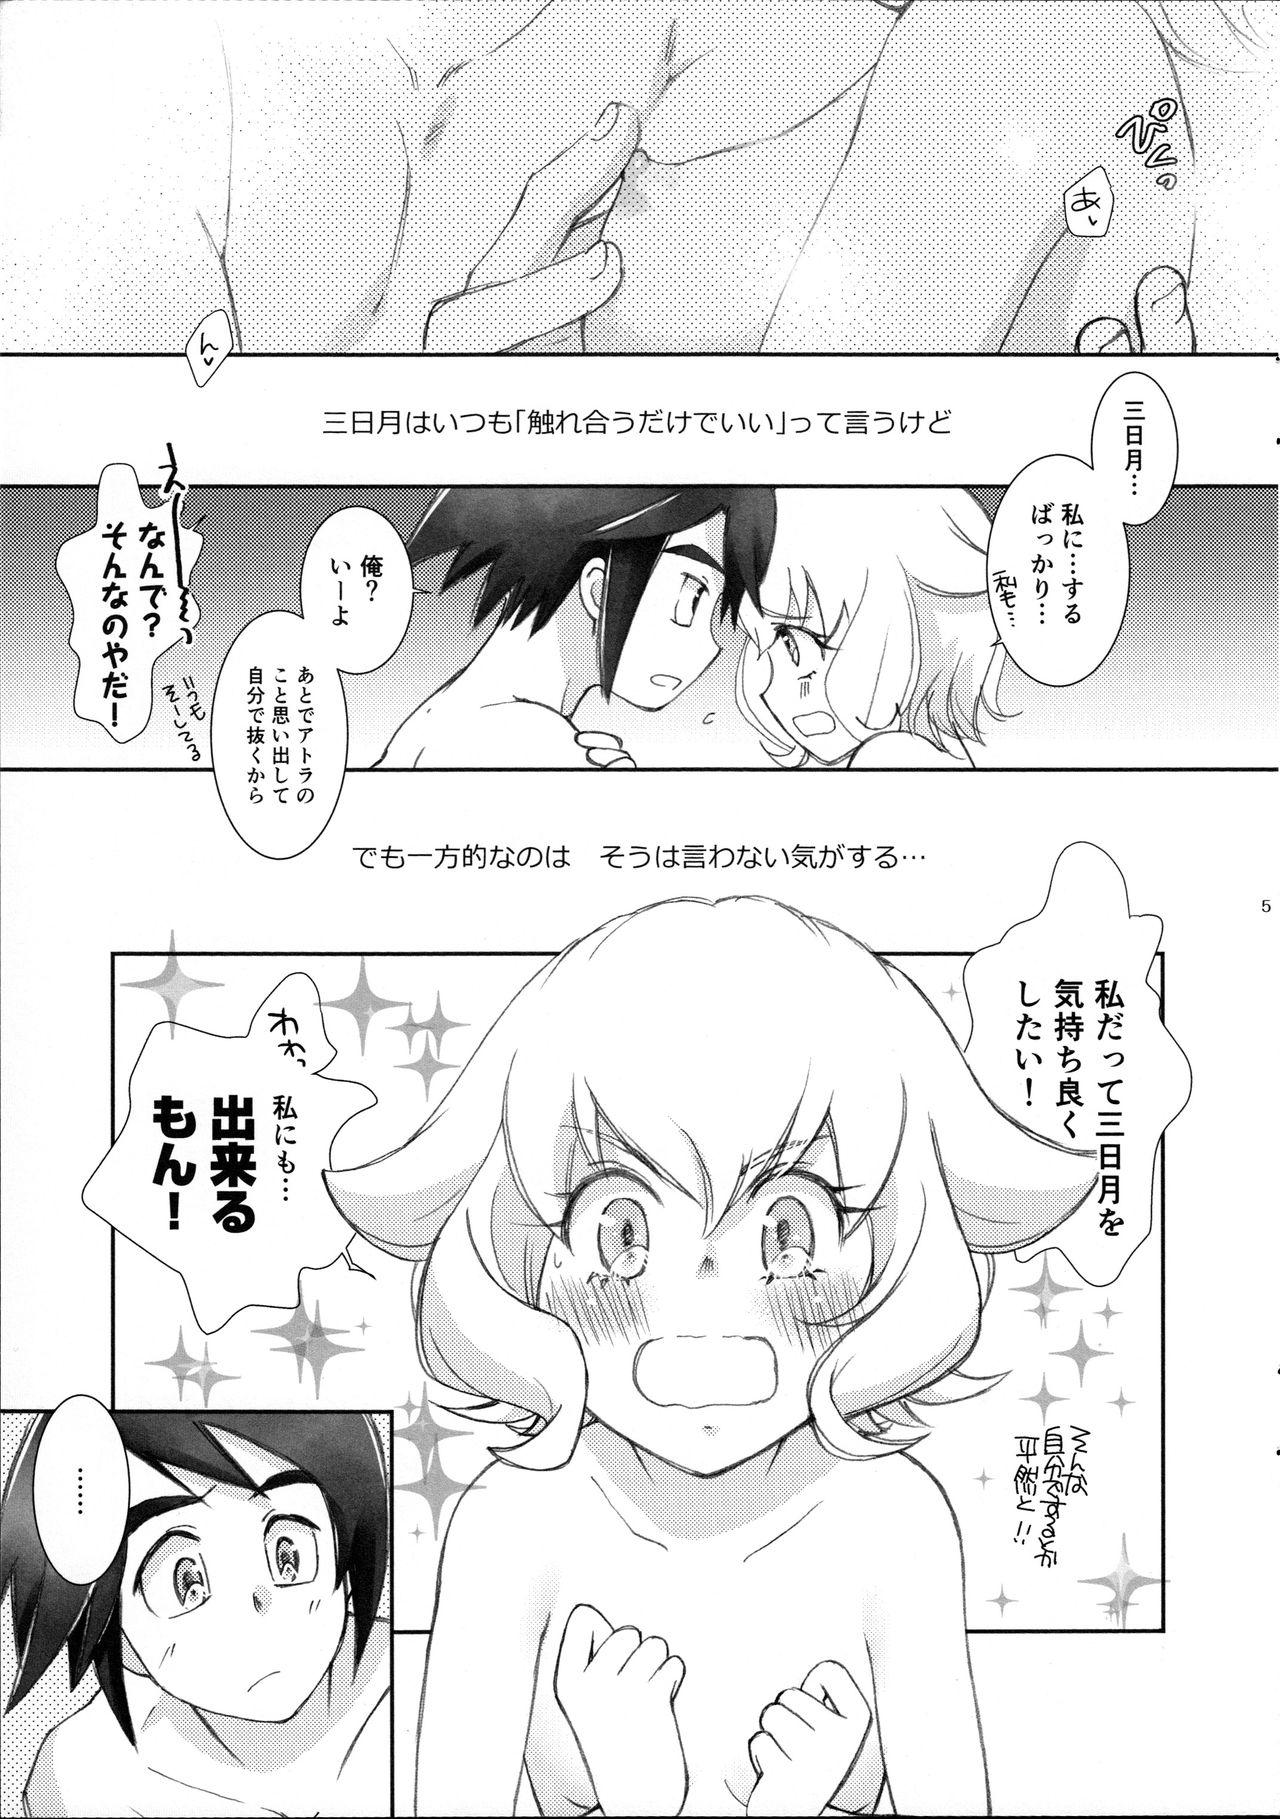 Lez Mikazuki wa Itsumo Saigomade Shinai - Mobile suit gundam tekketsu no orphans Comendo - Page 4